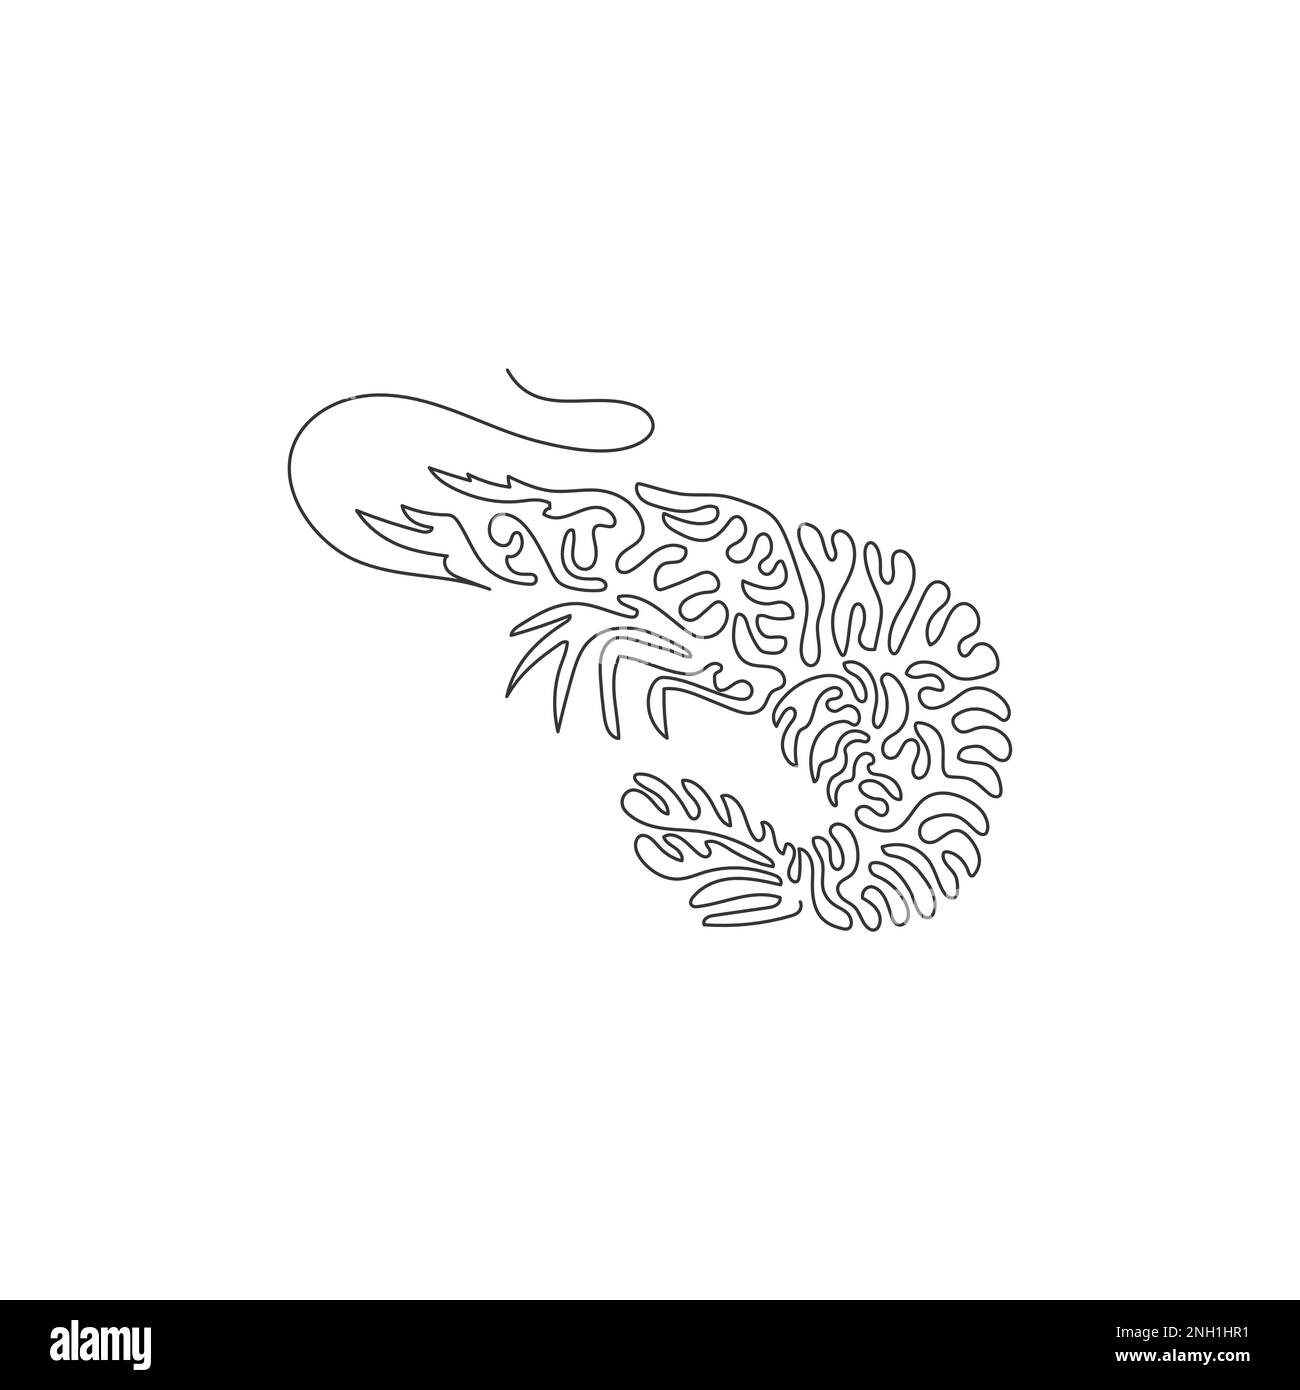 Simple tourbillon ligne continue dessin de belles crevettes. Dessin de ligne continue dessin vectoriel style d'illustration de longue antenne de crevettes Illustration de Vecteur